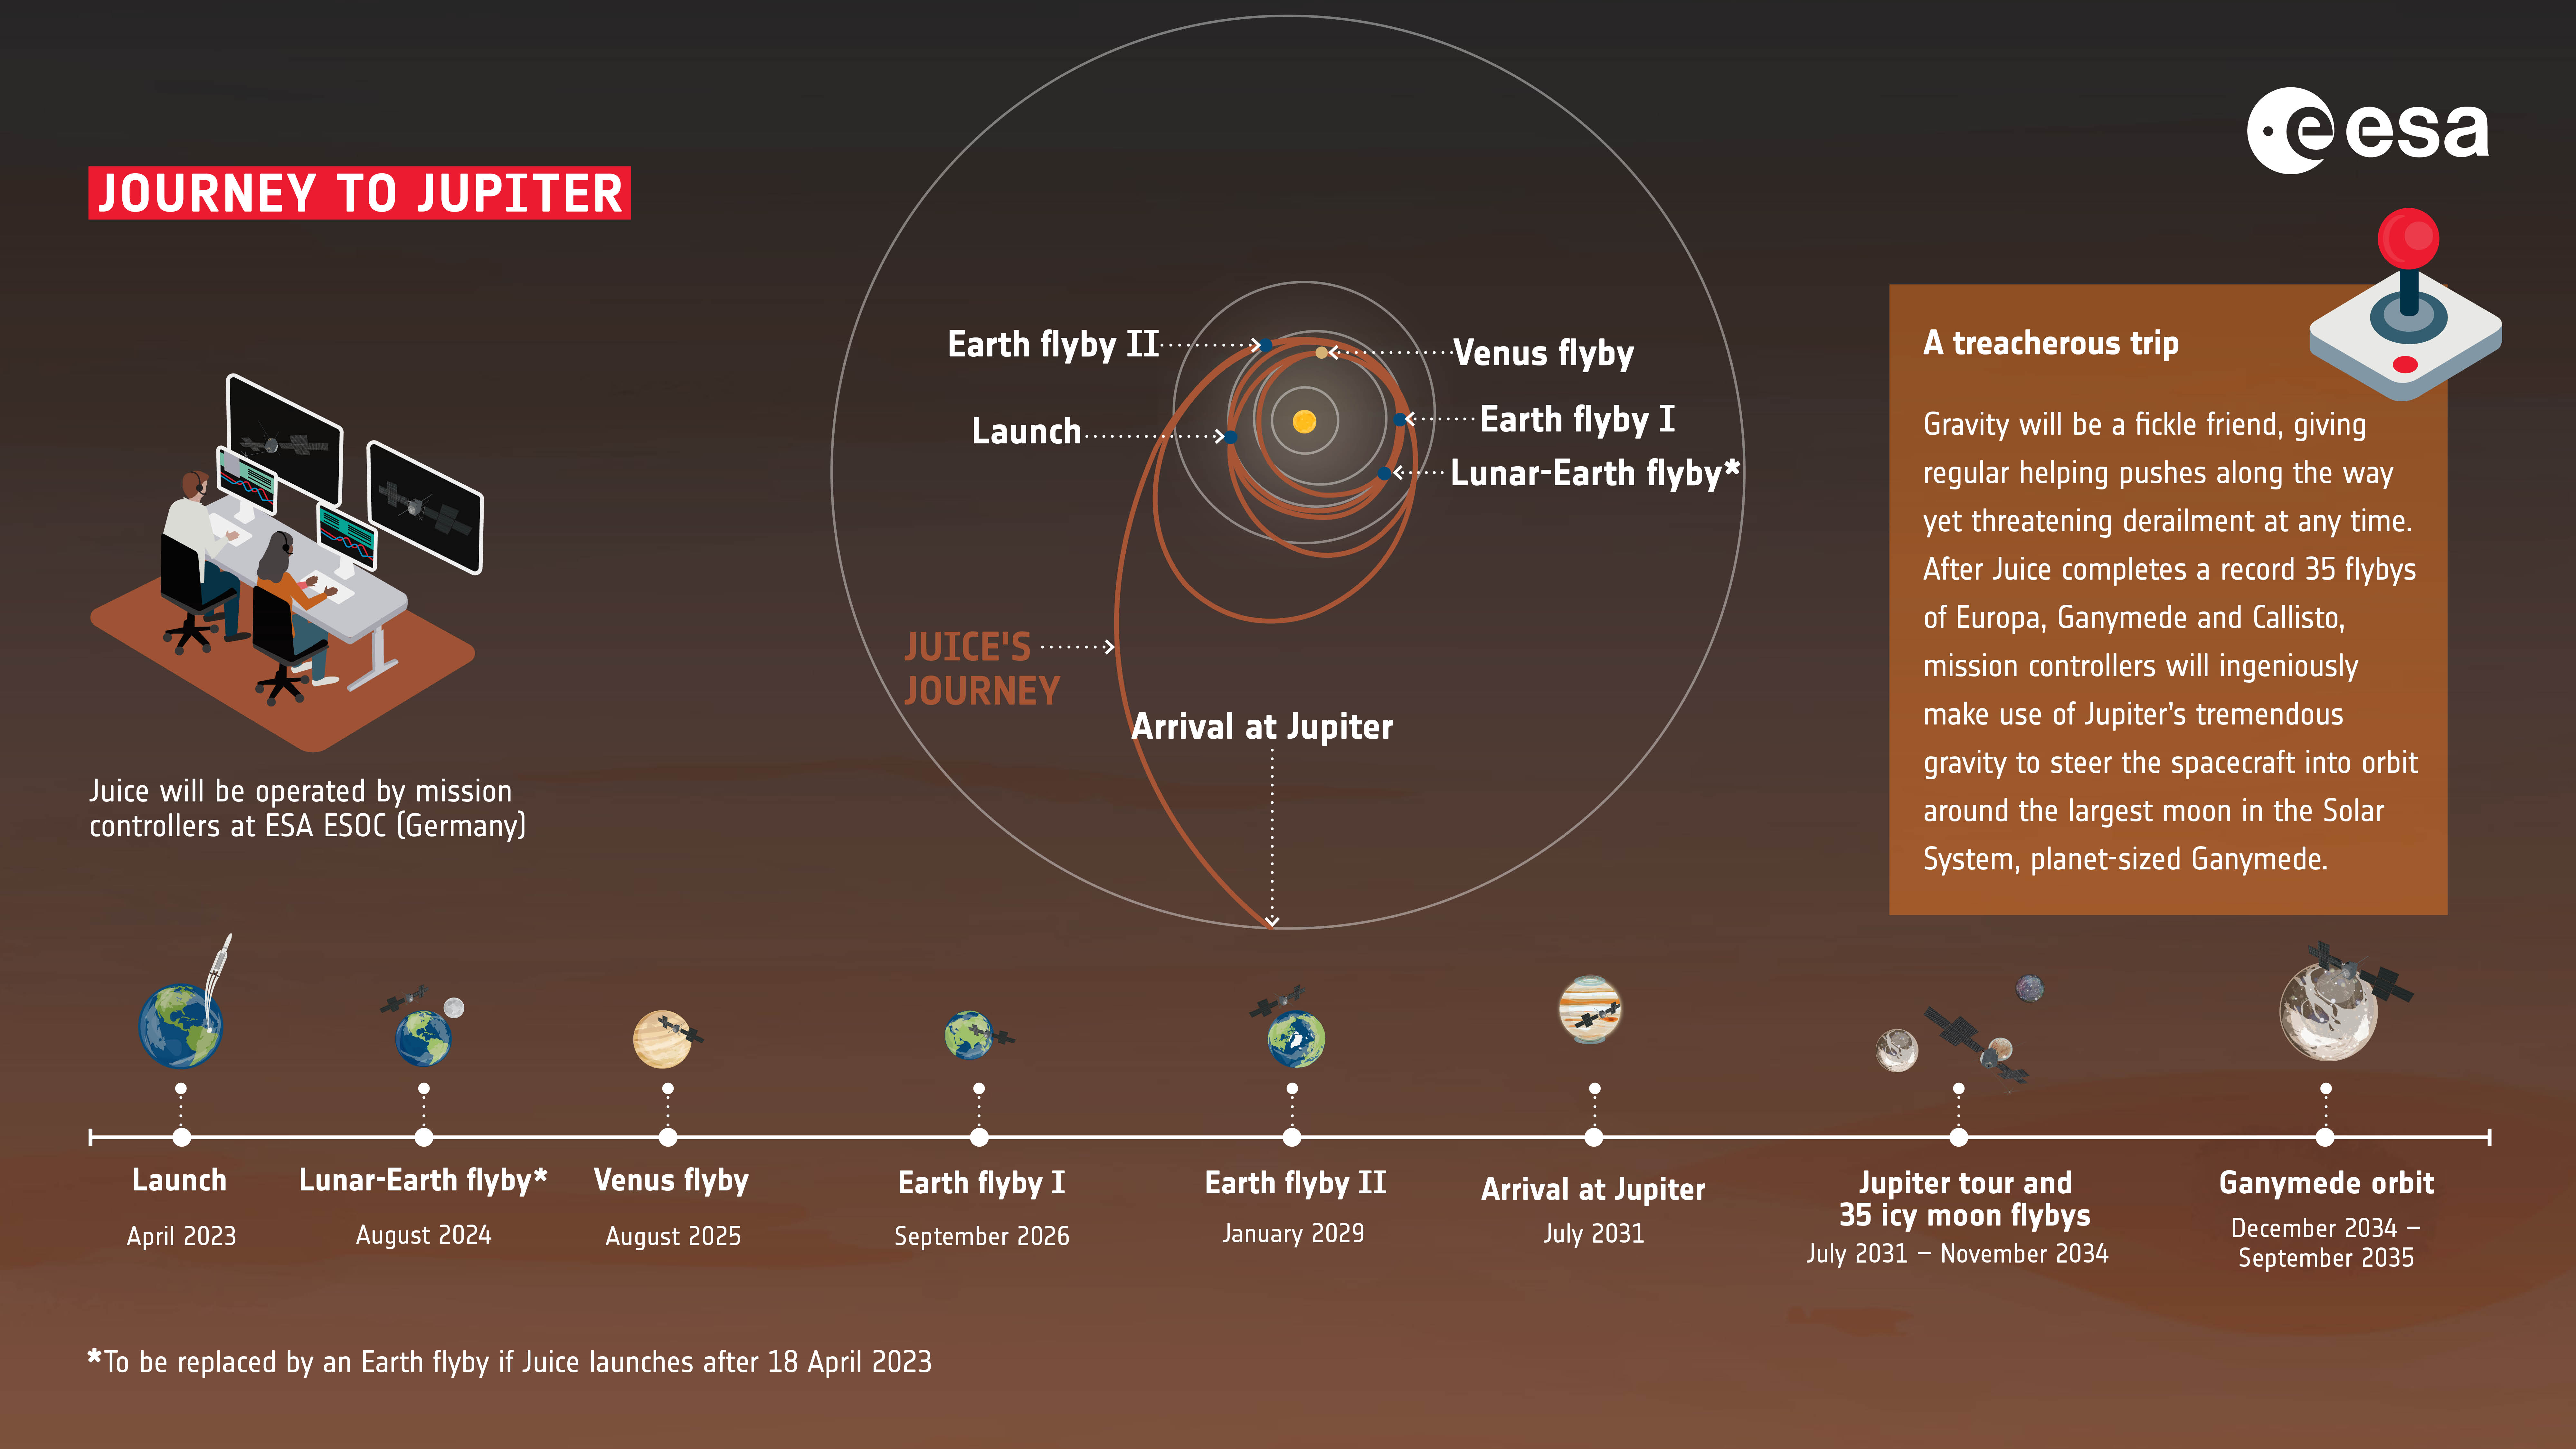 JUICE मिशन की समयरेखा, जिसमें बृहस्पति की यात्रा भी शामिल है।